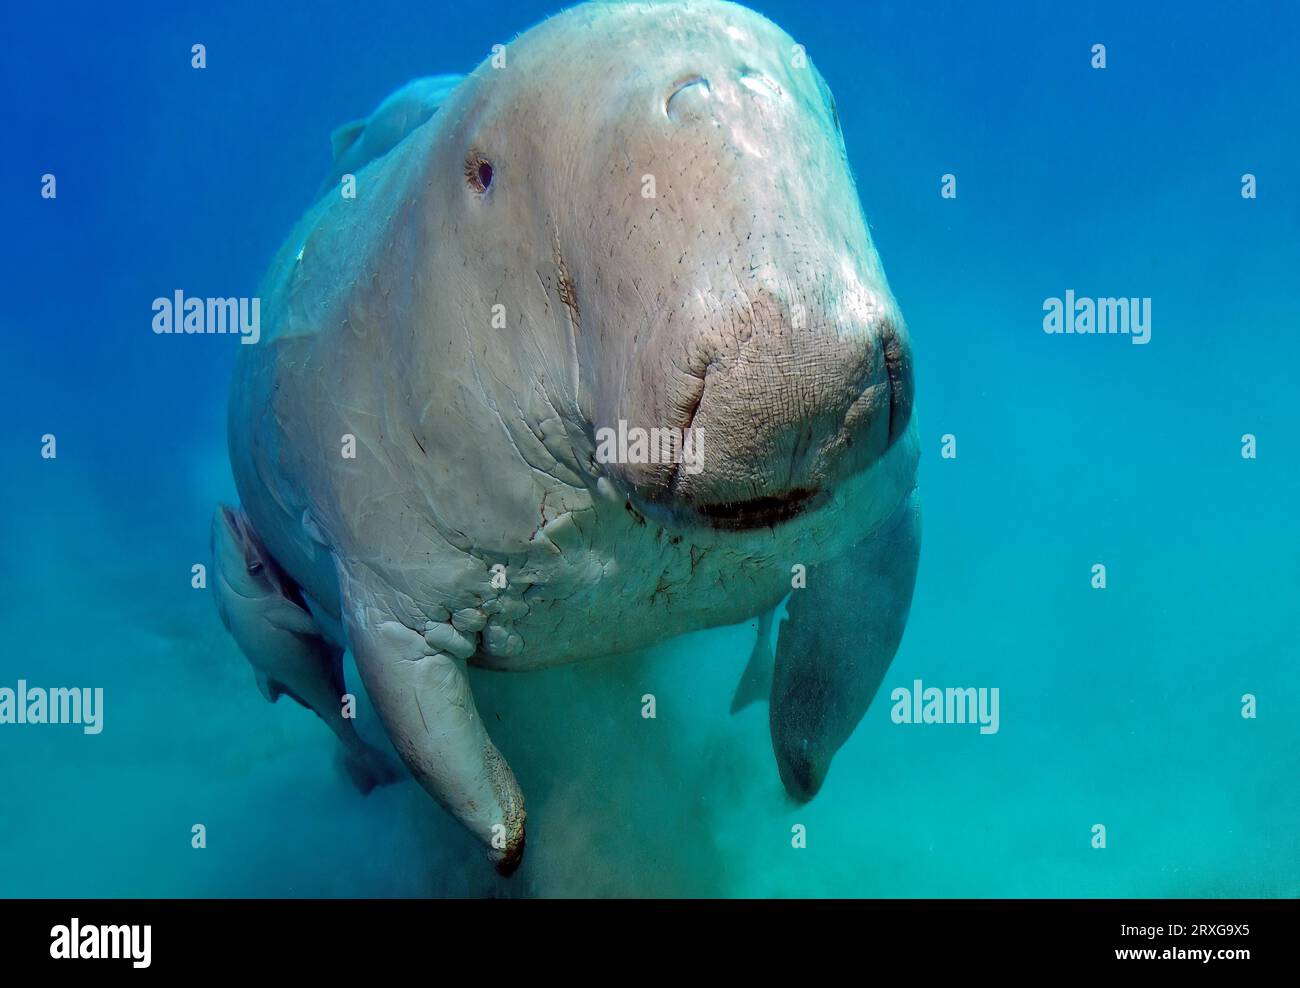 Nahaufnahme einer Seekuh mit Gabelschwanz (Dugong dugong), die direkt vor dem Betrachter, dem Roten Meer, Abu Dabab, Marsa Alam, Ägypten, schwimmt Stockfoto